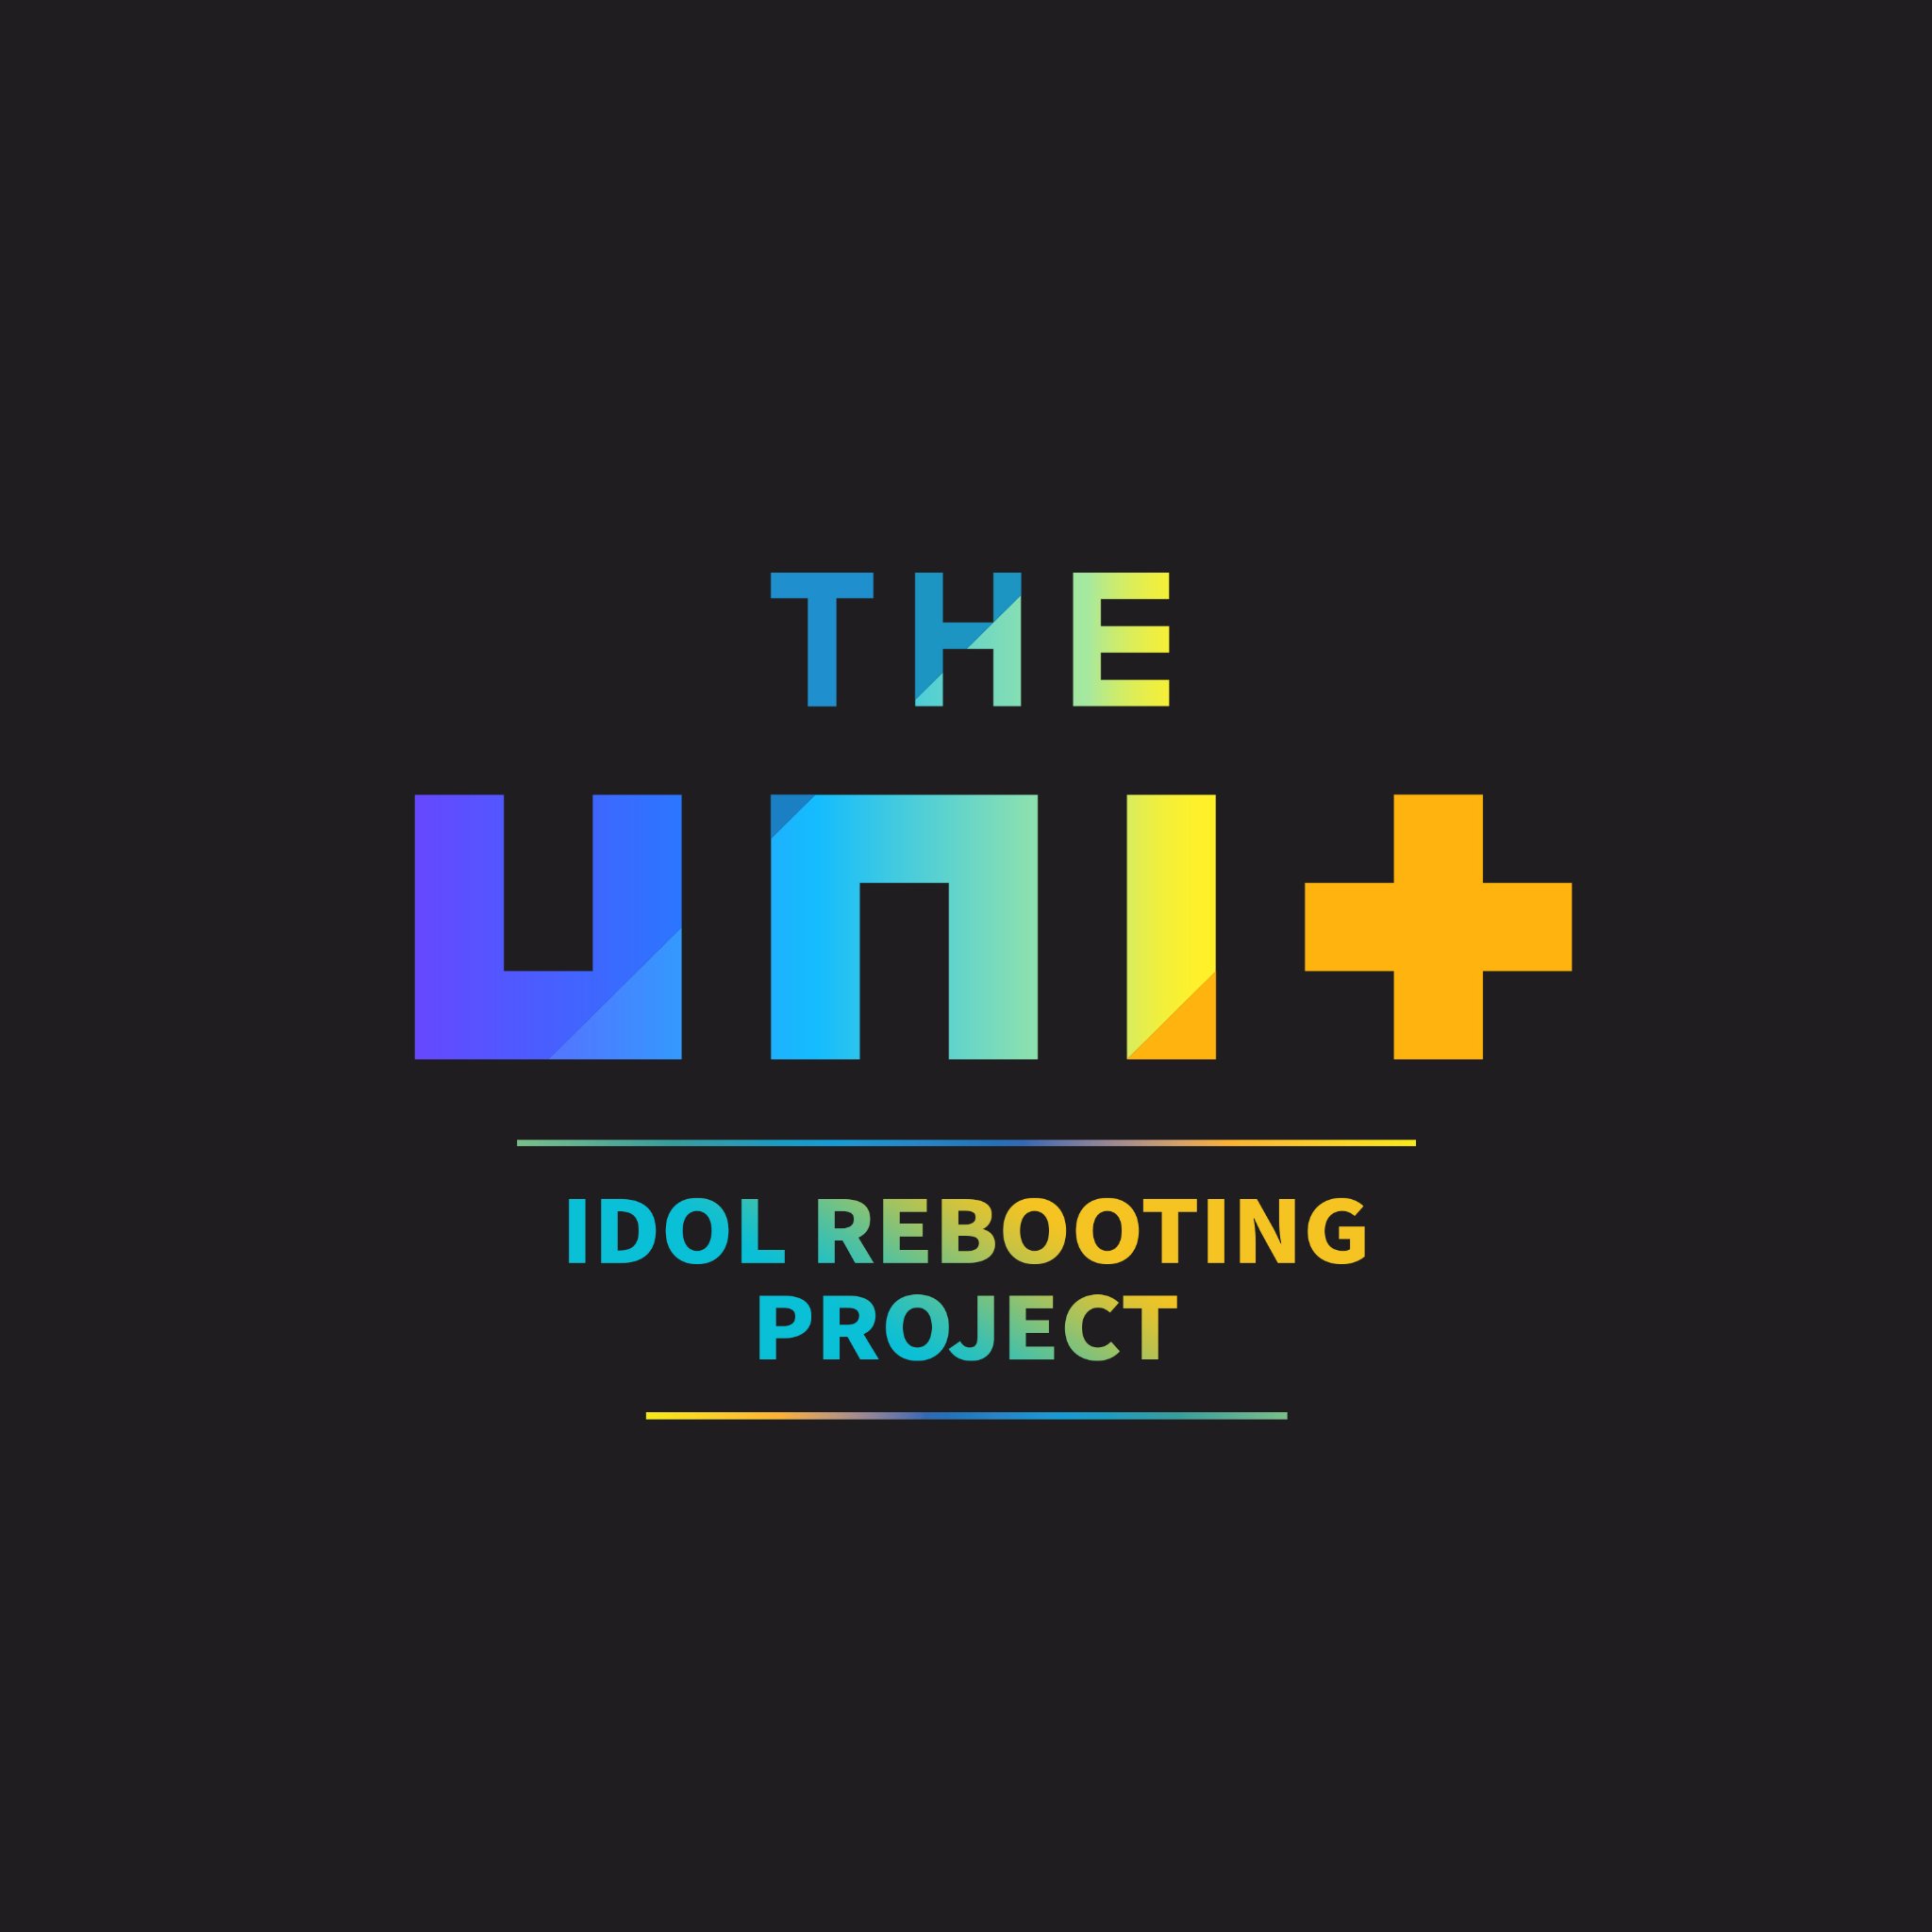 더 유닛 공식 트위터 THE UNIT official twitter  2월 18일 밤 11시 20분 스페셜 쇼 방송